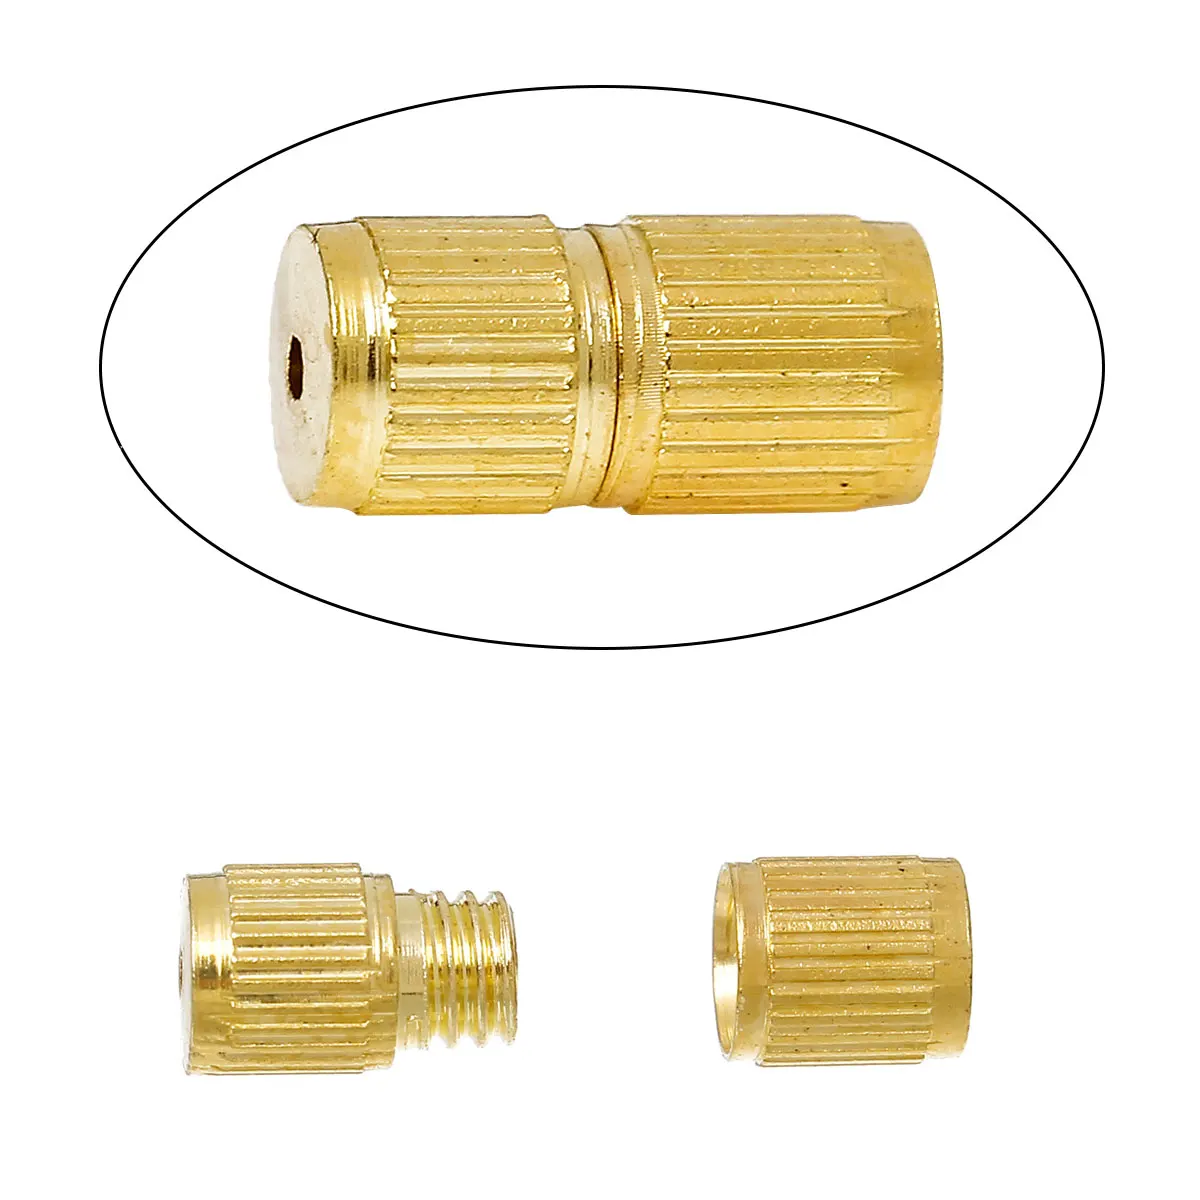 8 сезонов медные винтовые застежки ожерелье браслет фурнитура цилиндр золотой цвет 8 мм(3/") x 4 мм(1/8"), 50 шт